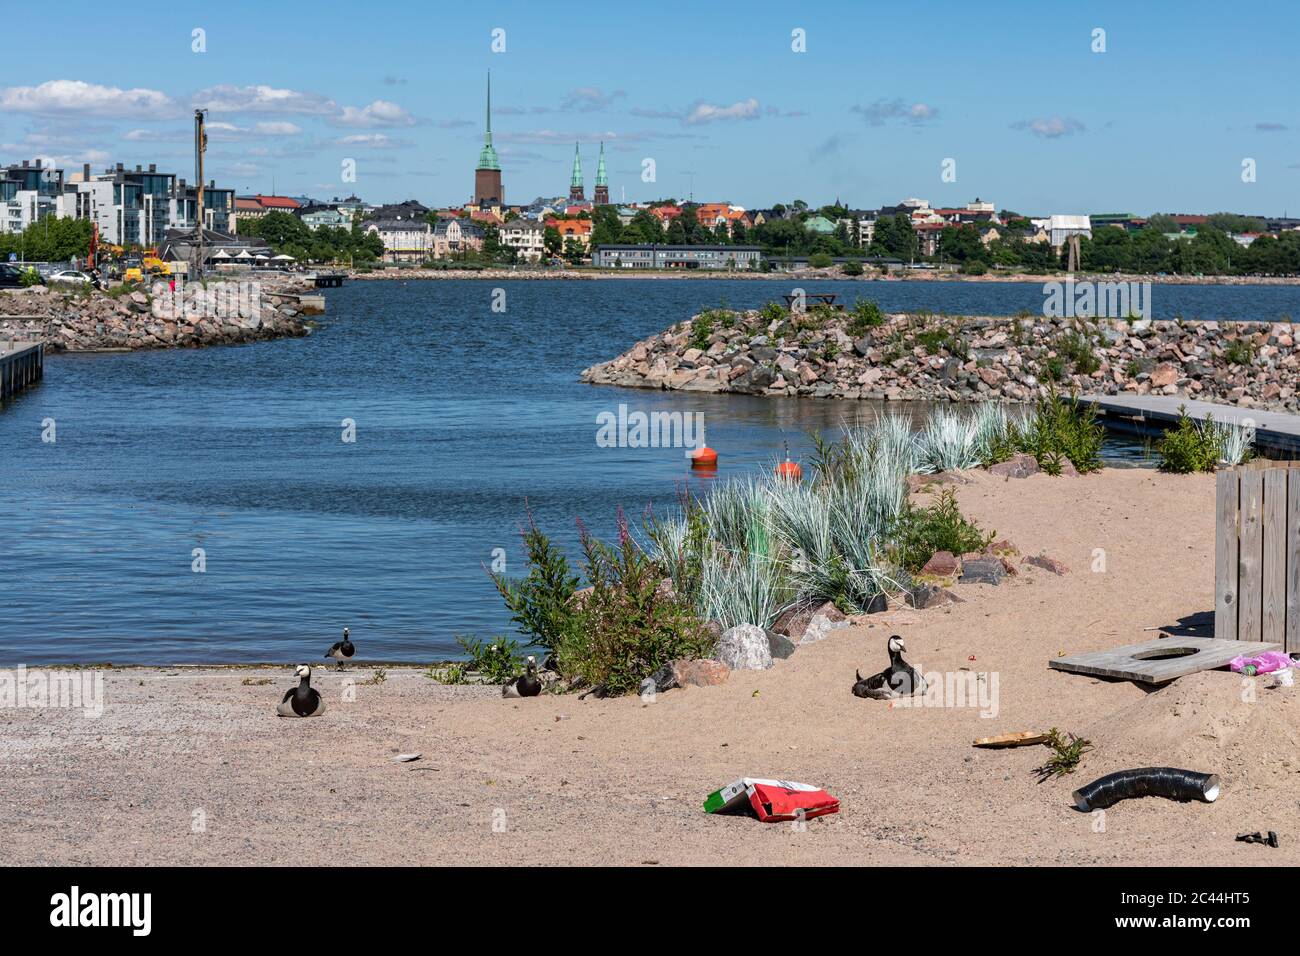 Plage de sable abandonnée du centre d'événements de Hernesaaren Ranta avec boîte à pizza jetée et bernaches de la bernache à Helsinki, en Finlande Banque D'Images